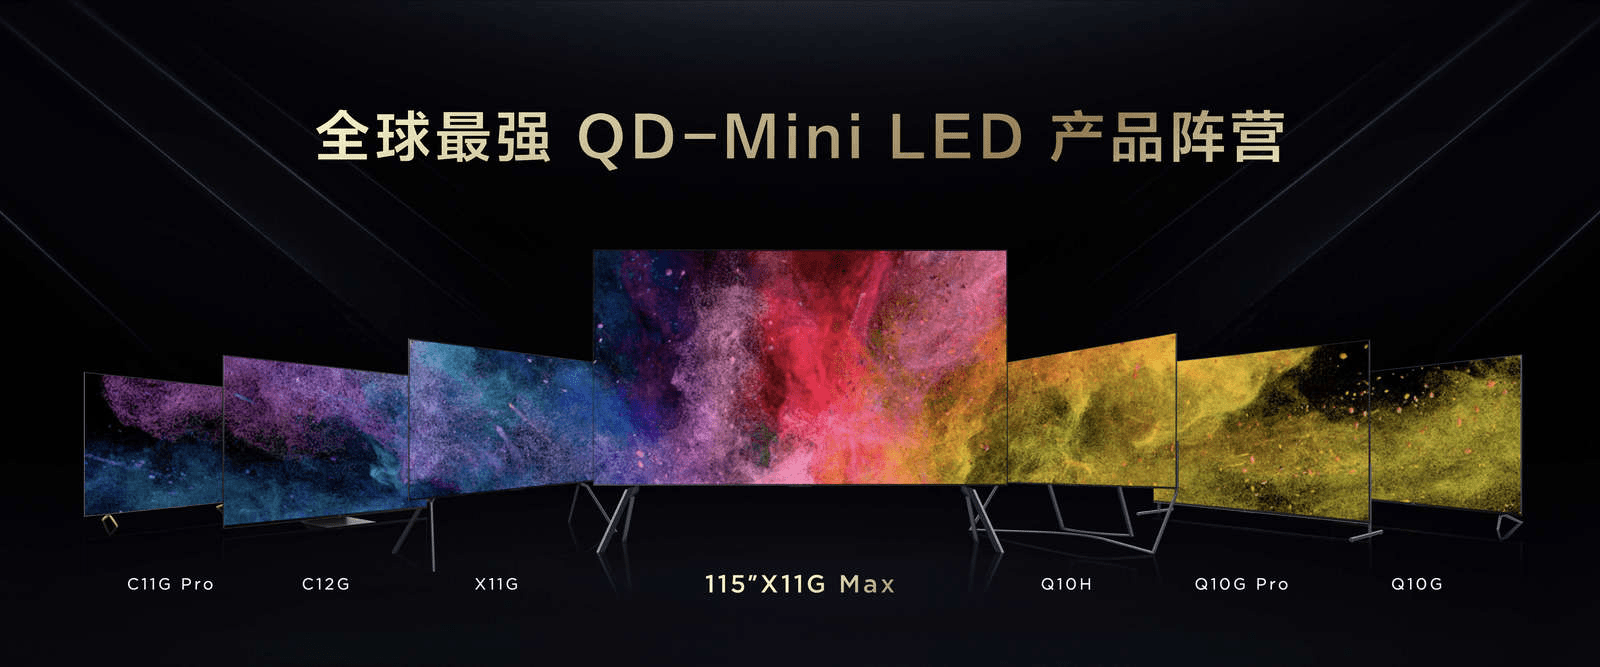 TCL推出全新115吋X11G Max Mini LED电视，继续引领超大屏电视市场